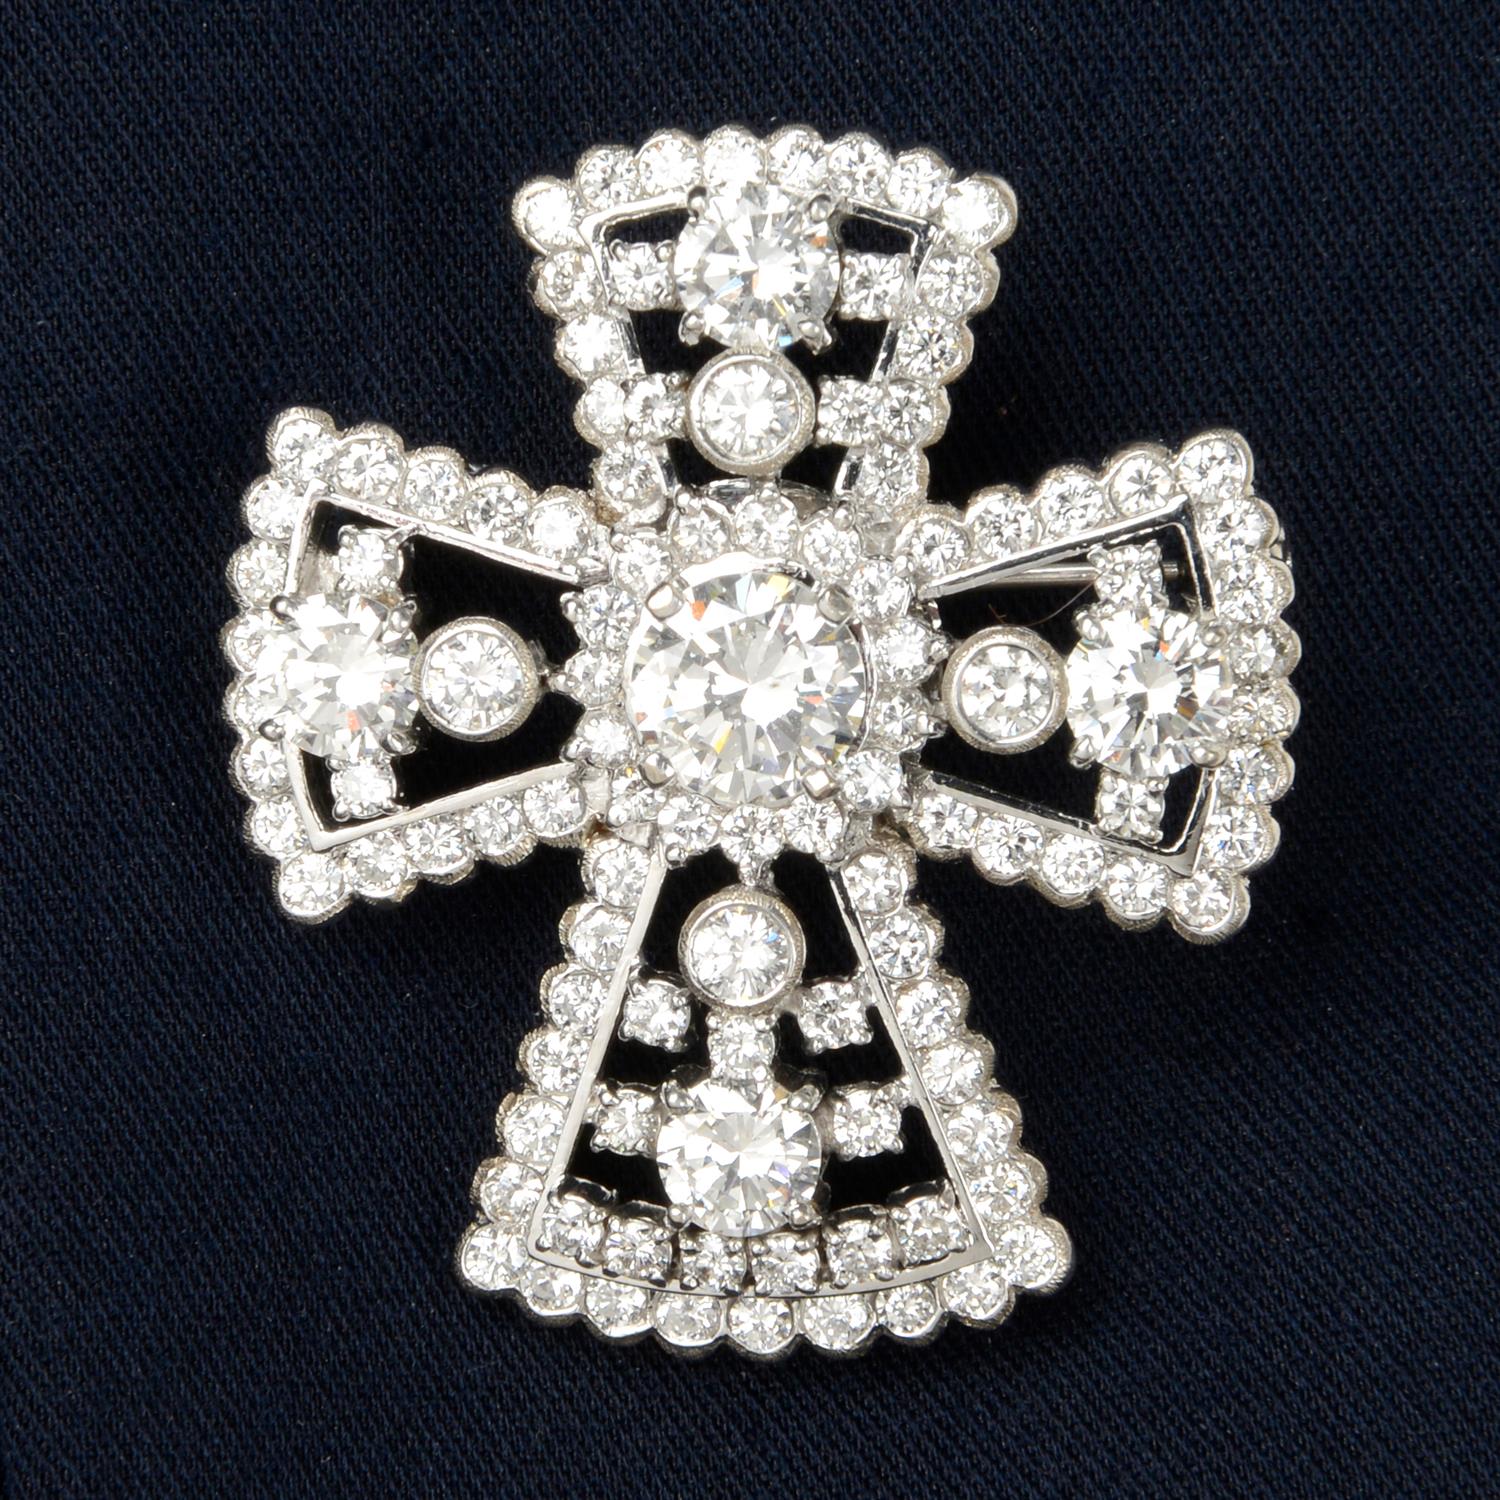 Diamond cross brooch